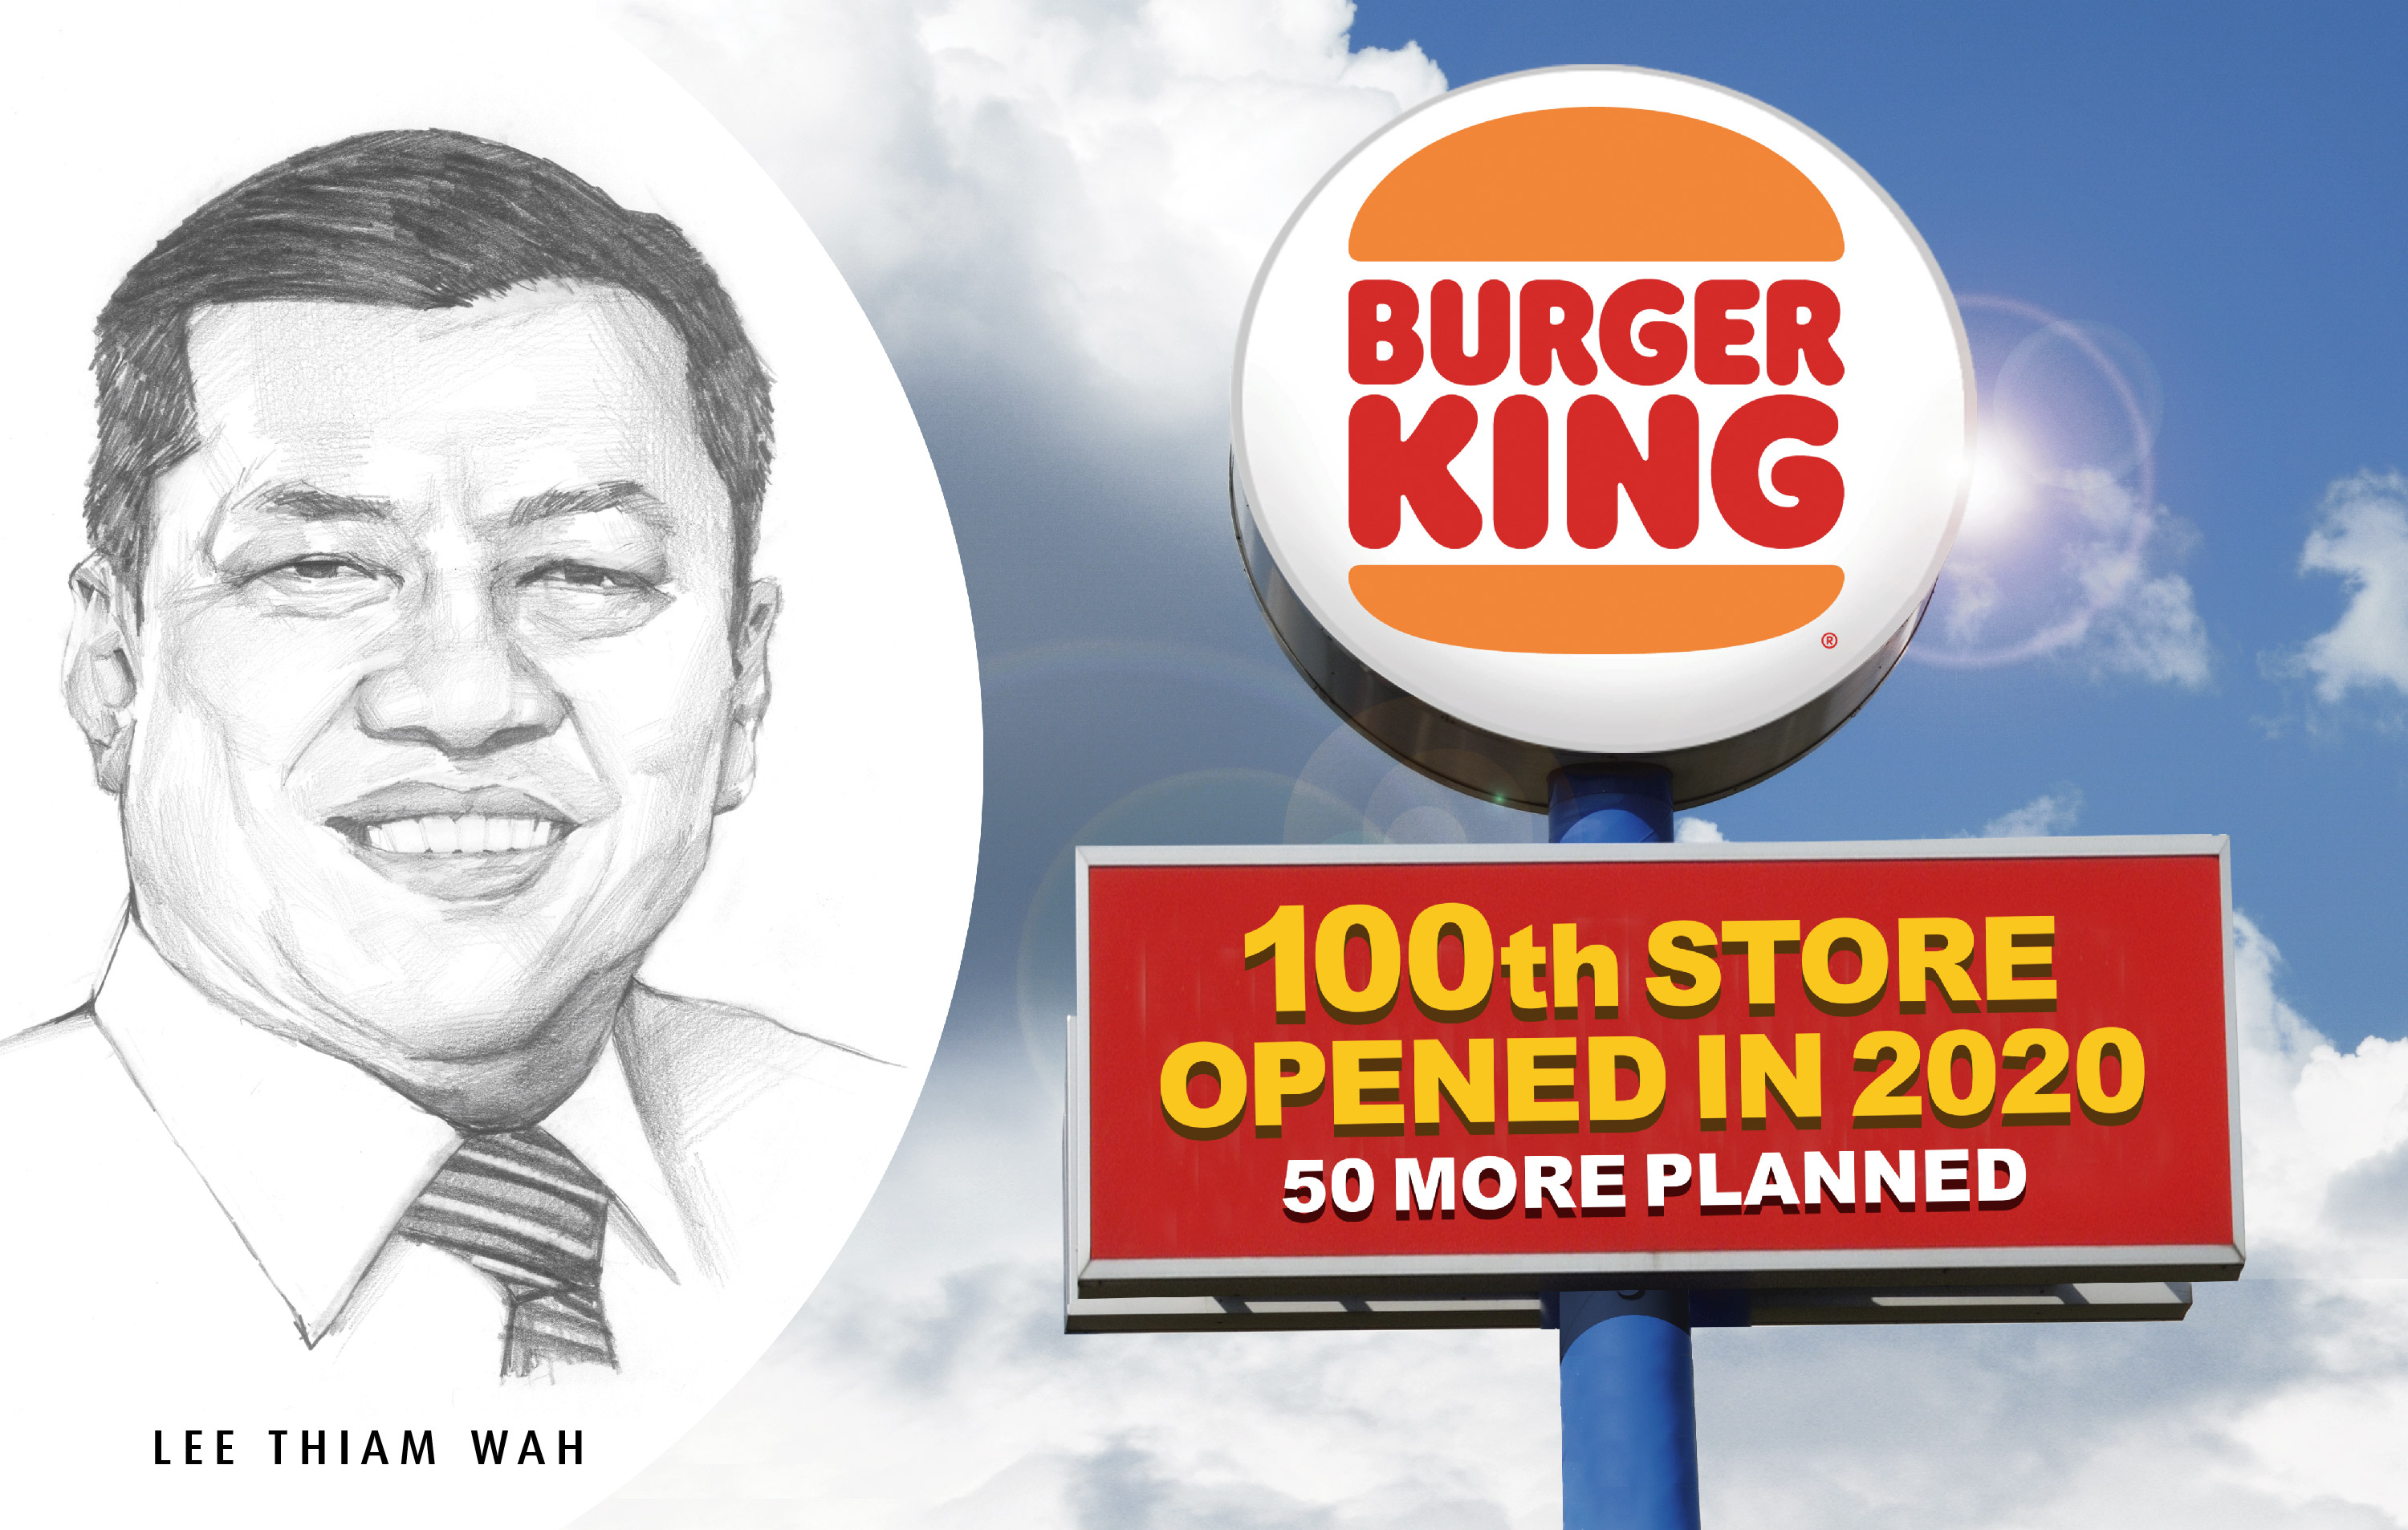 99 Speedmart's Lee Thiam Wah is refurbishing and rebranding  Burger King restaurants